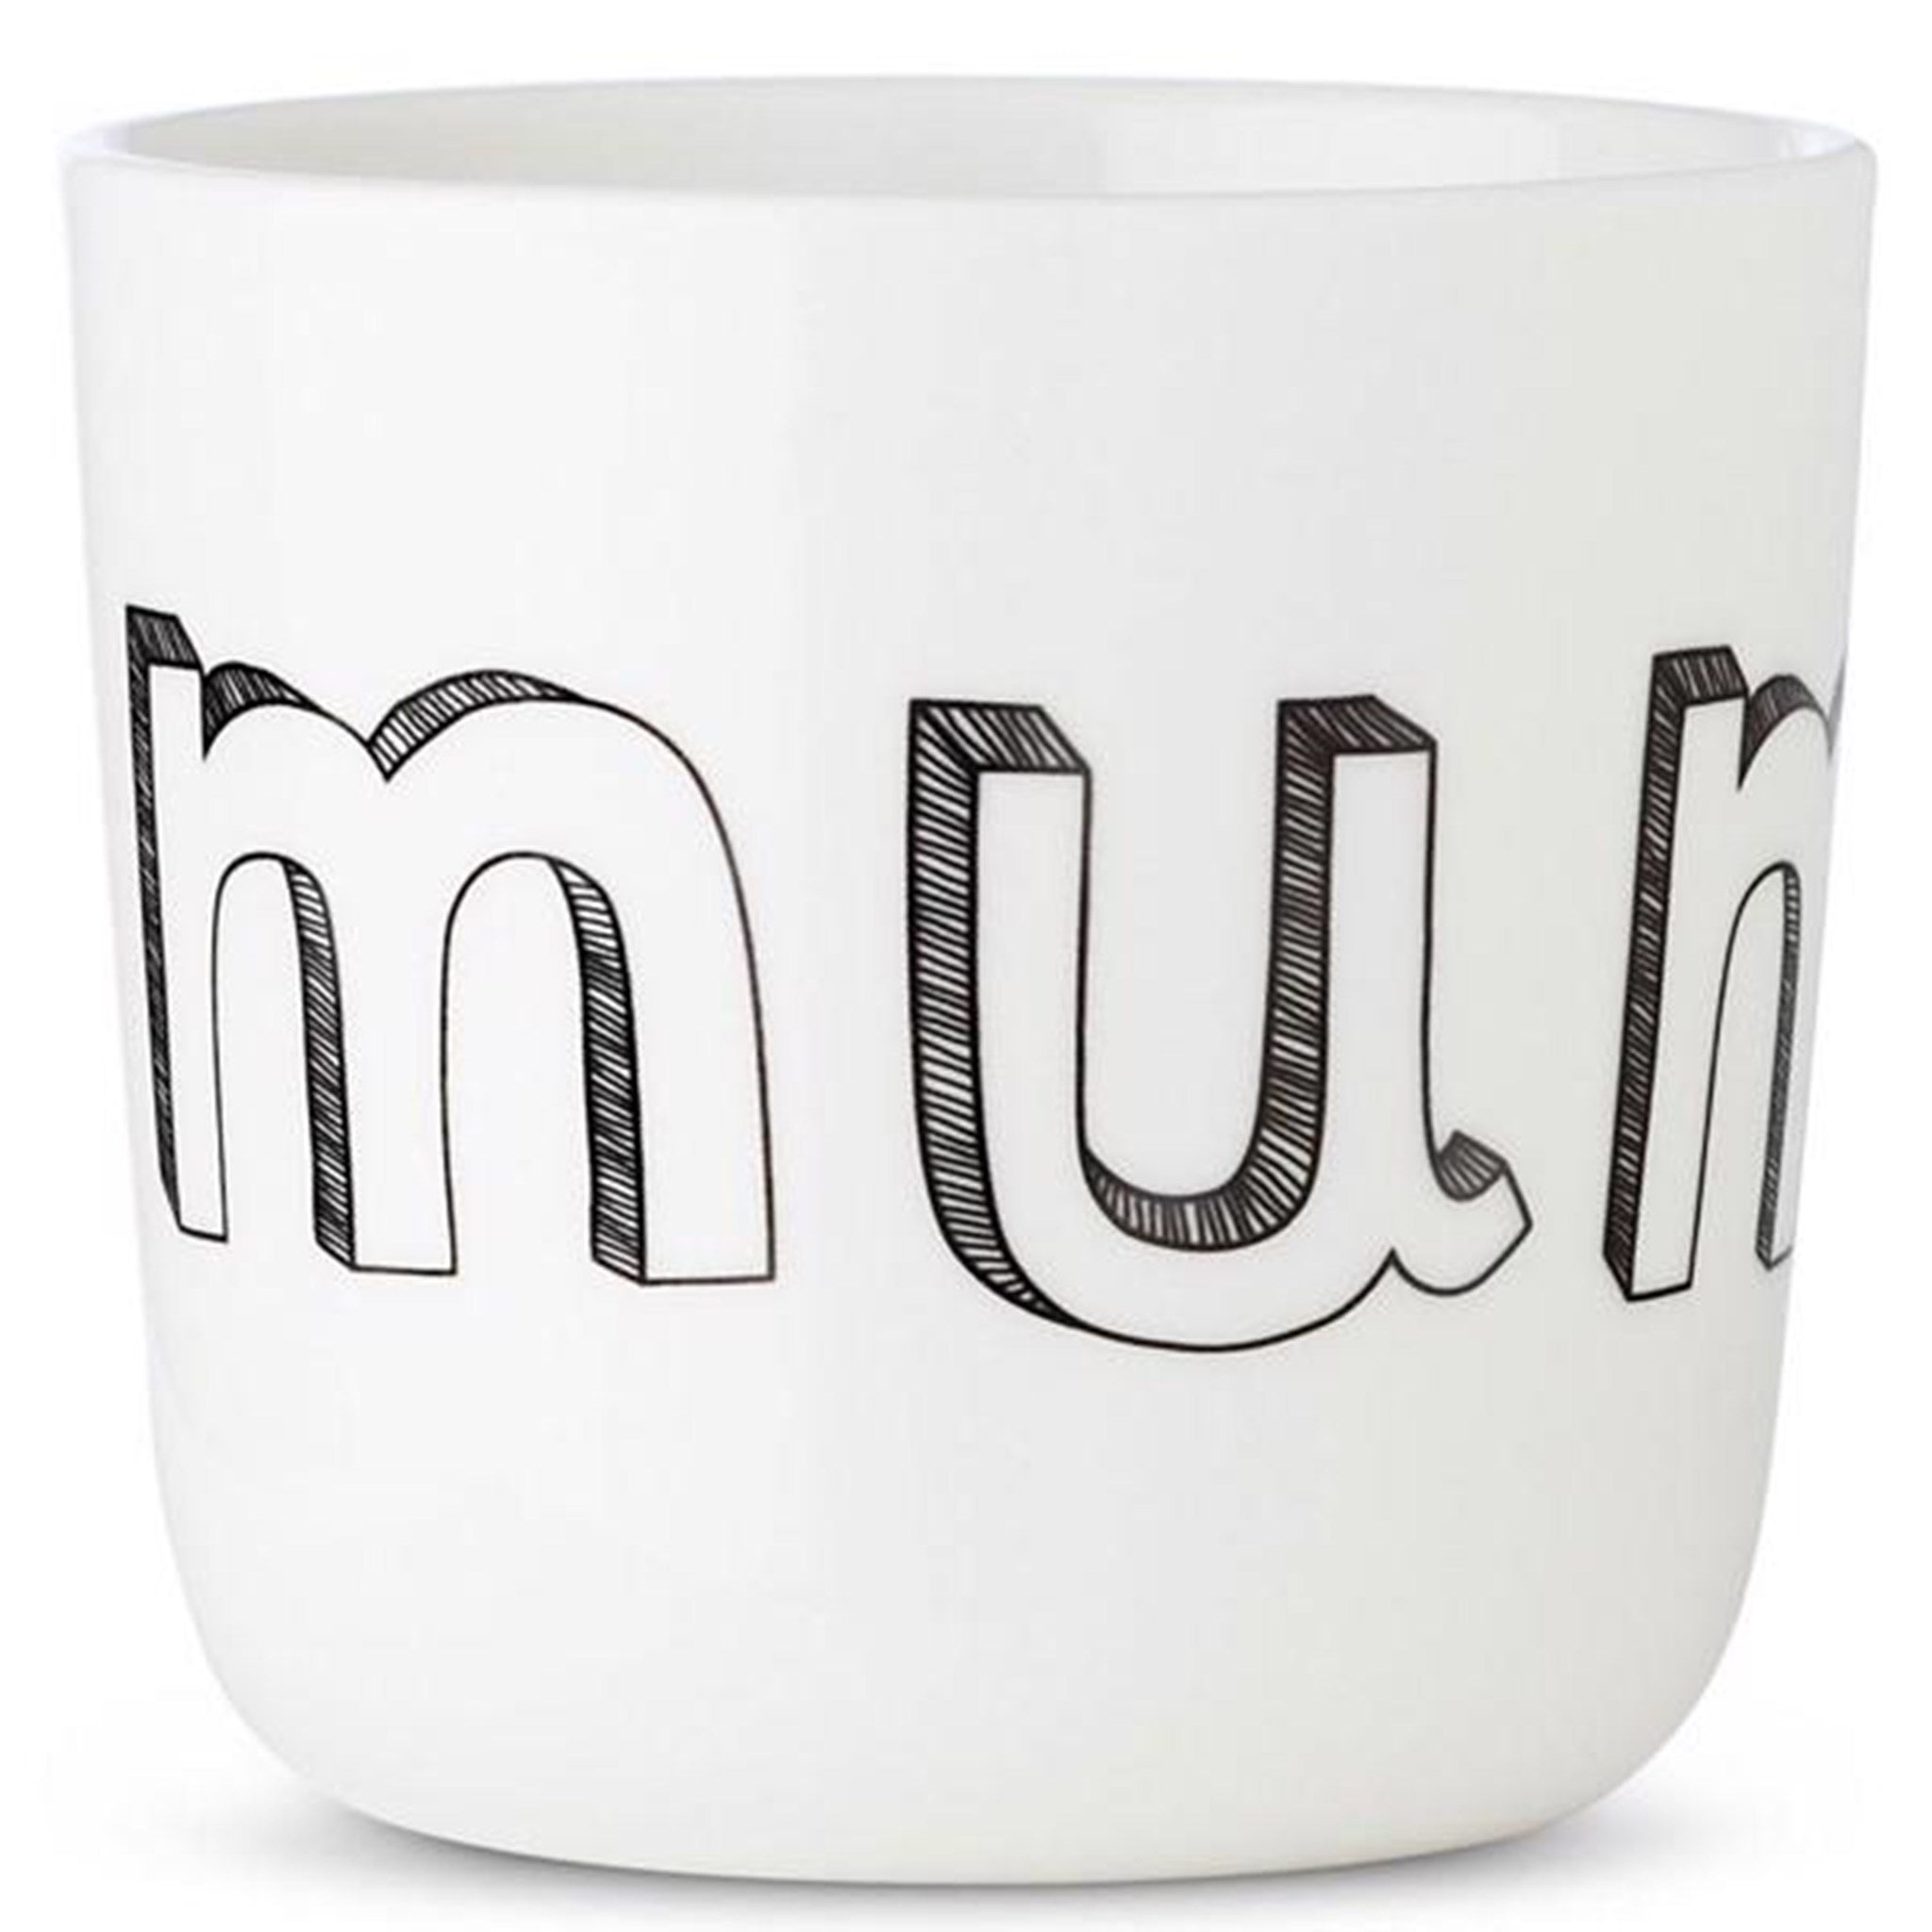 Liebe Cup (mum)